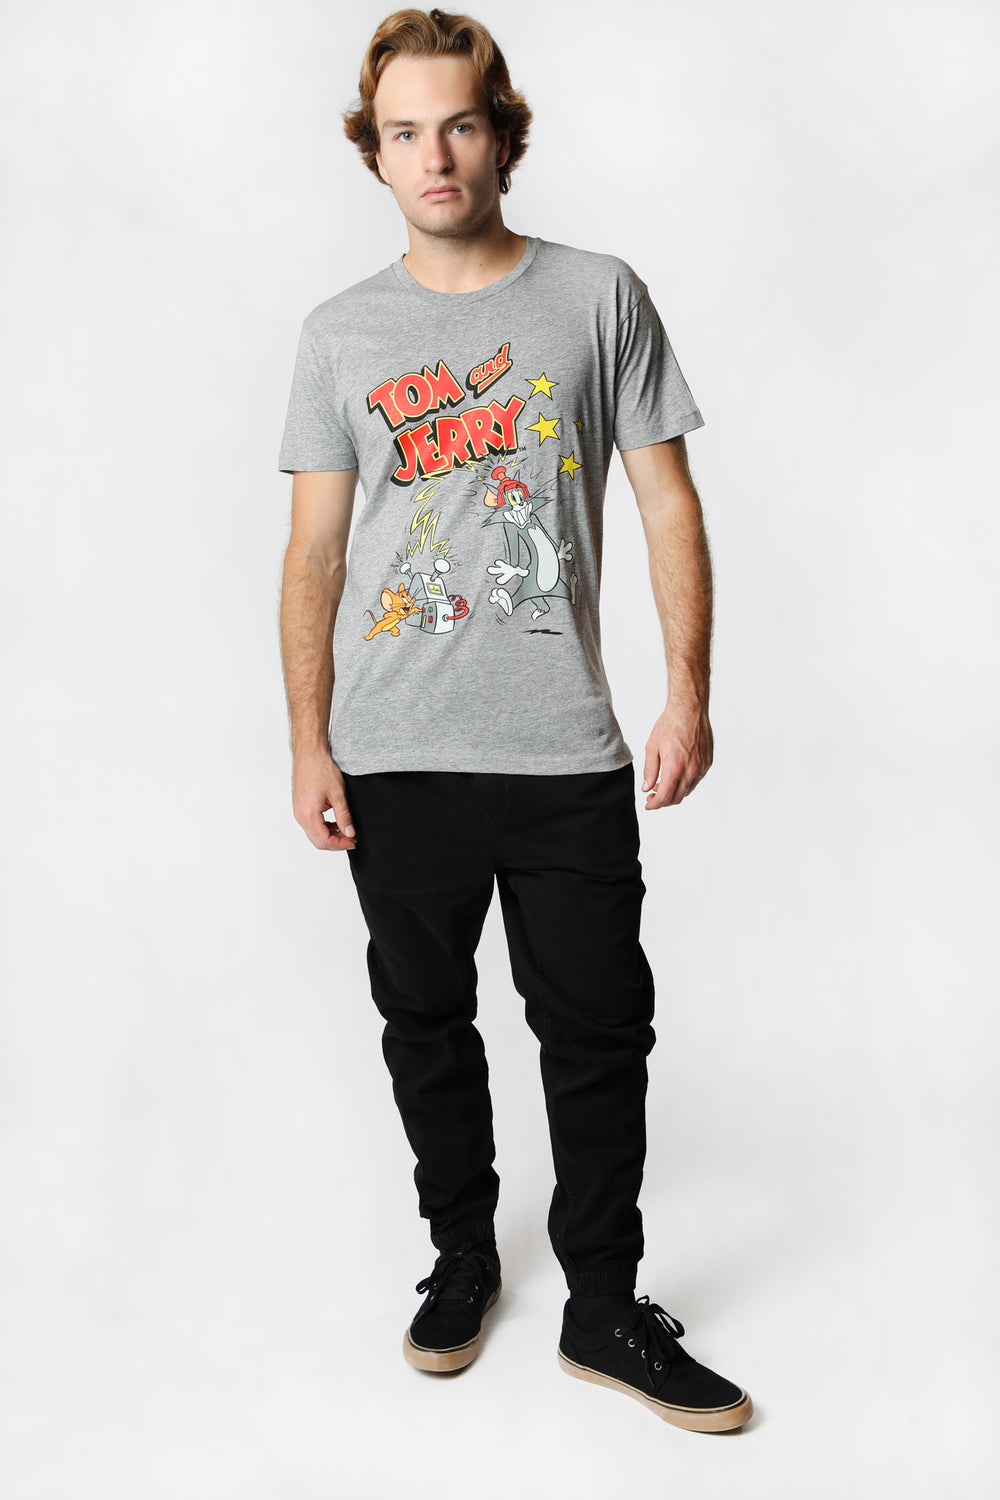 T-Shirt Imprimé Tom et Jerry Homme T-Shirt Imprimé Tom et Jerry Homme